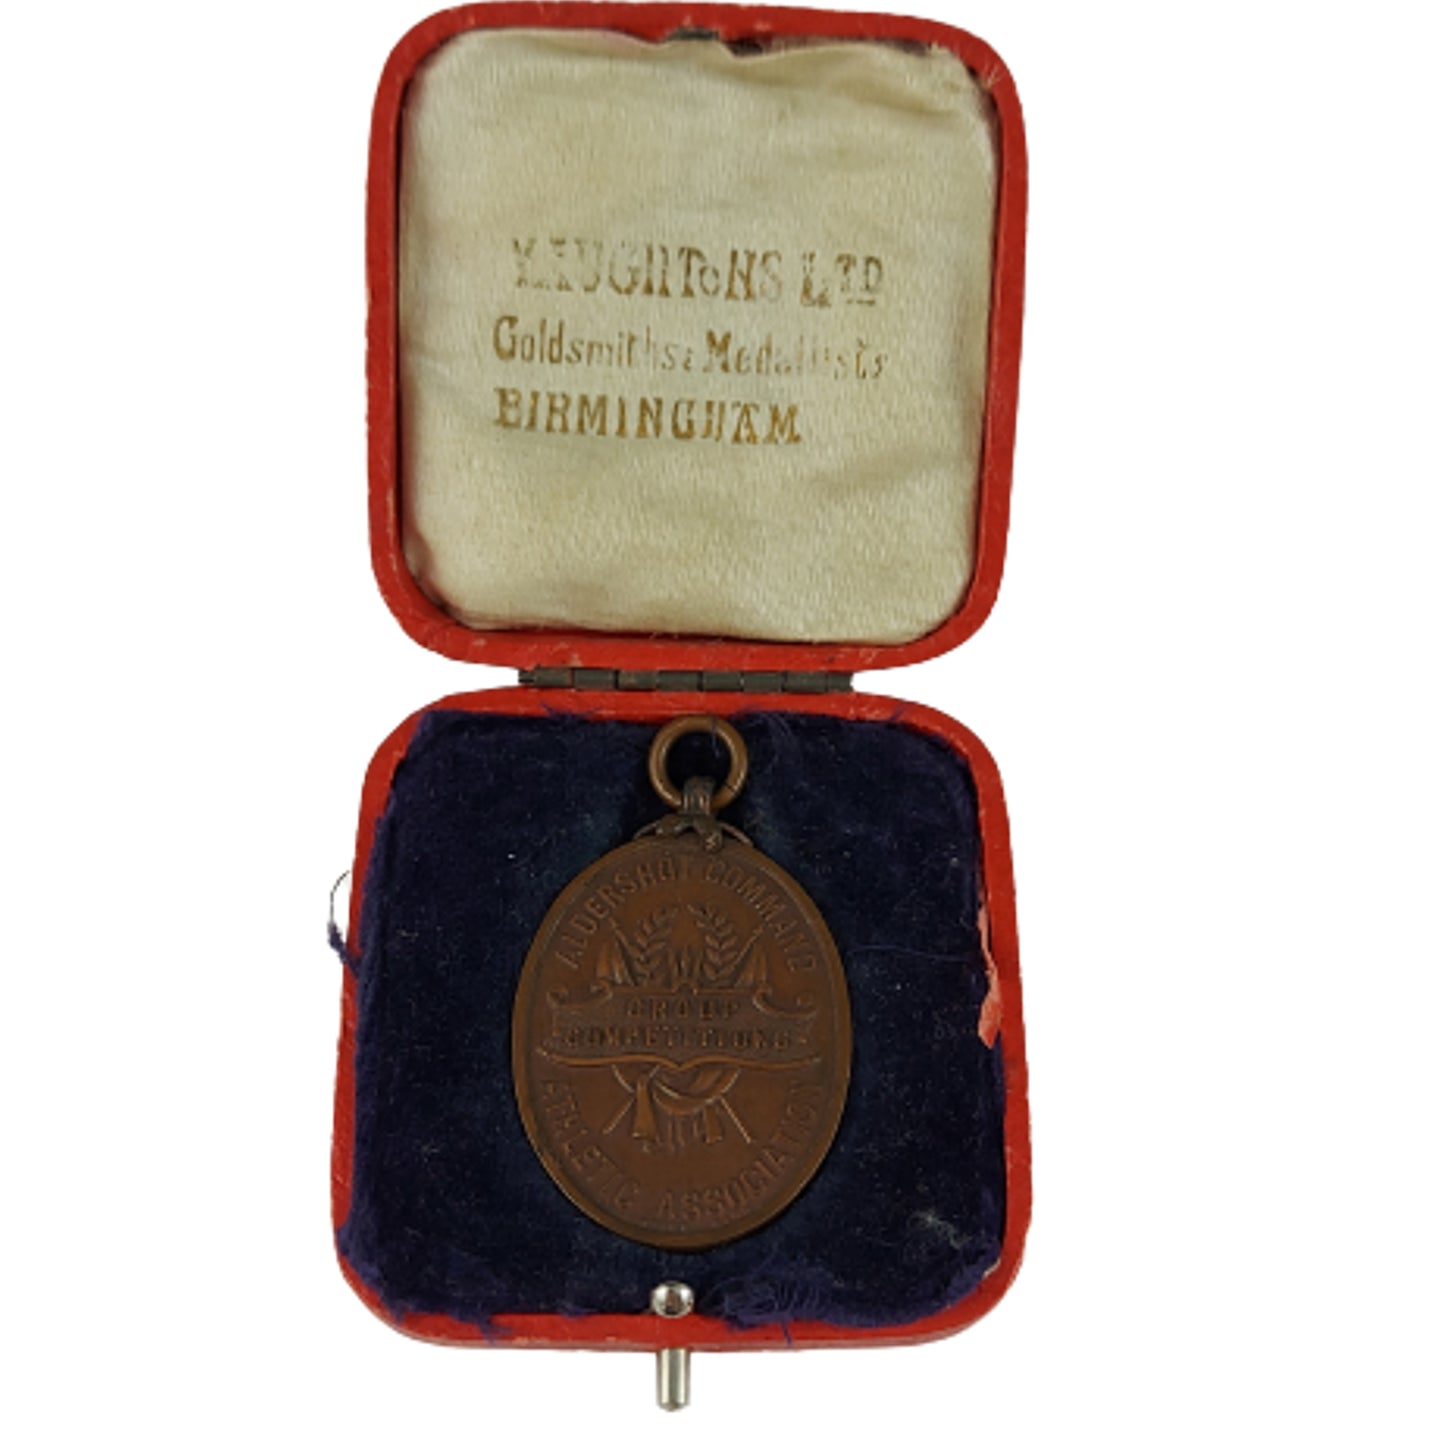 Cased WW1 Era Aldershot Command Athletic Association Medal